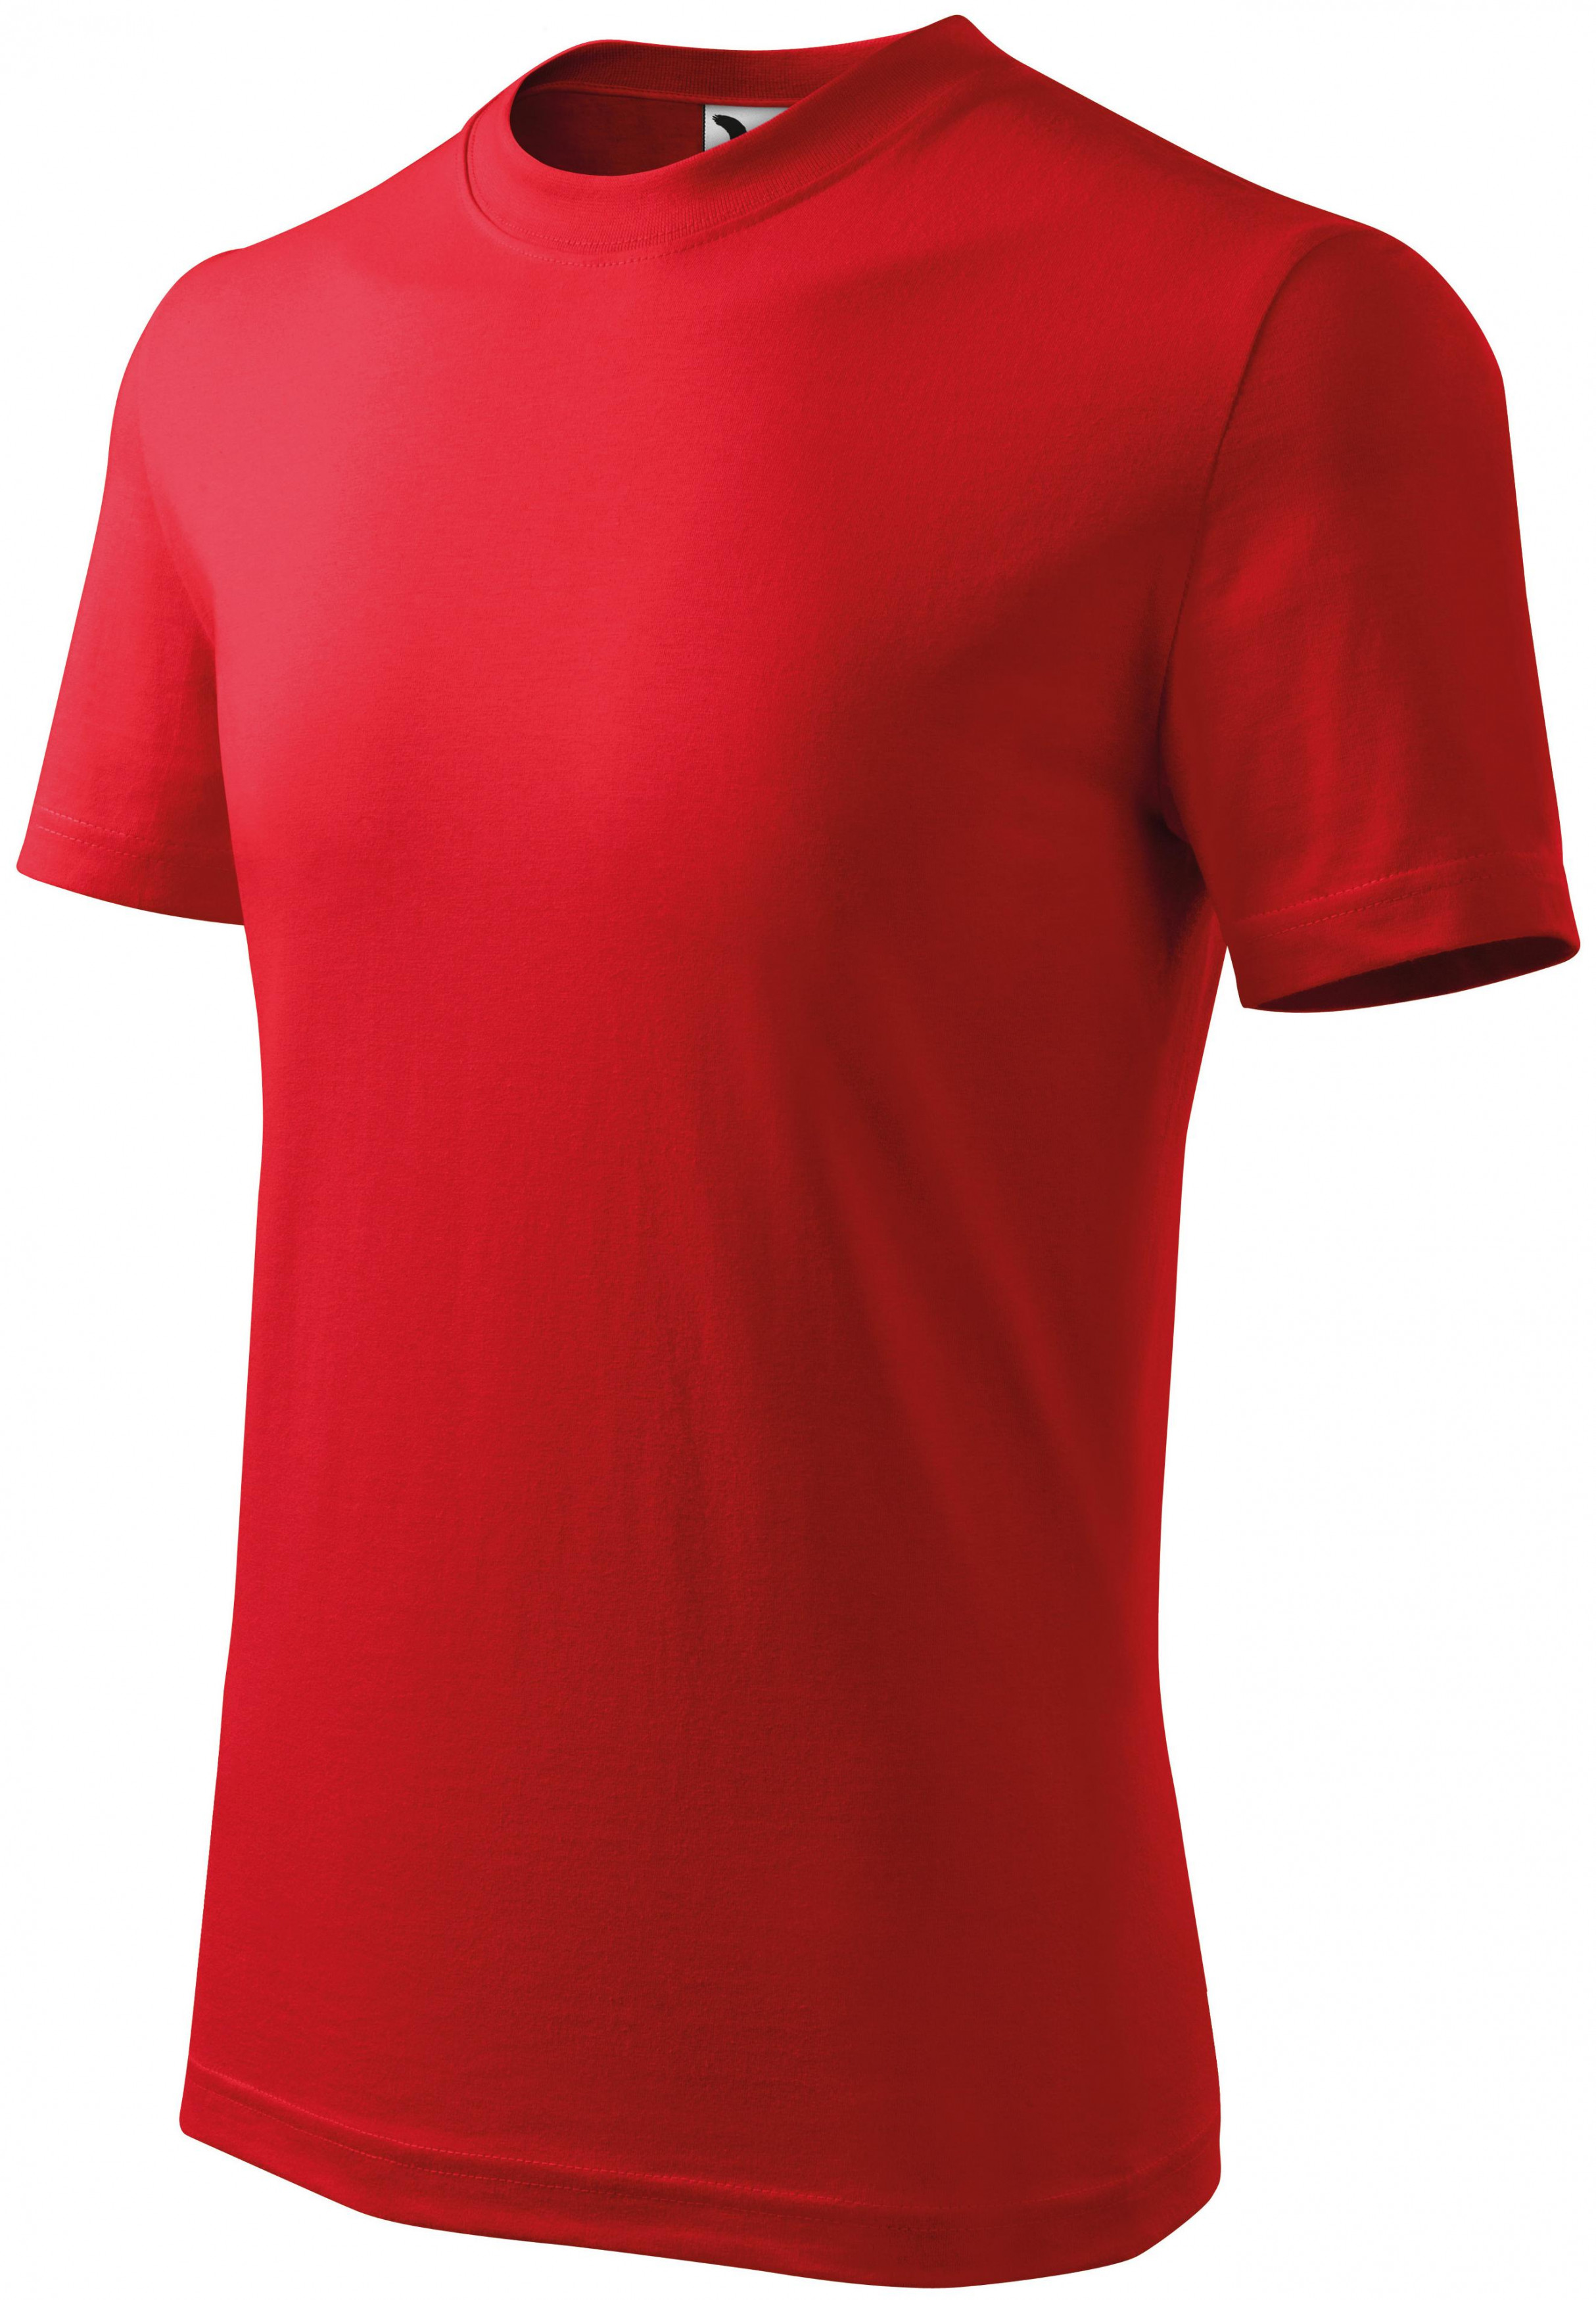 Detské tričko klasické, červená, 110cm / 4roky